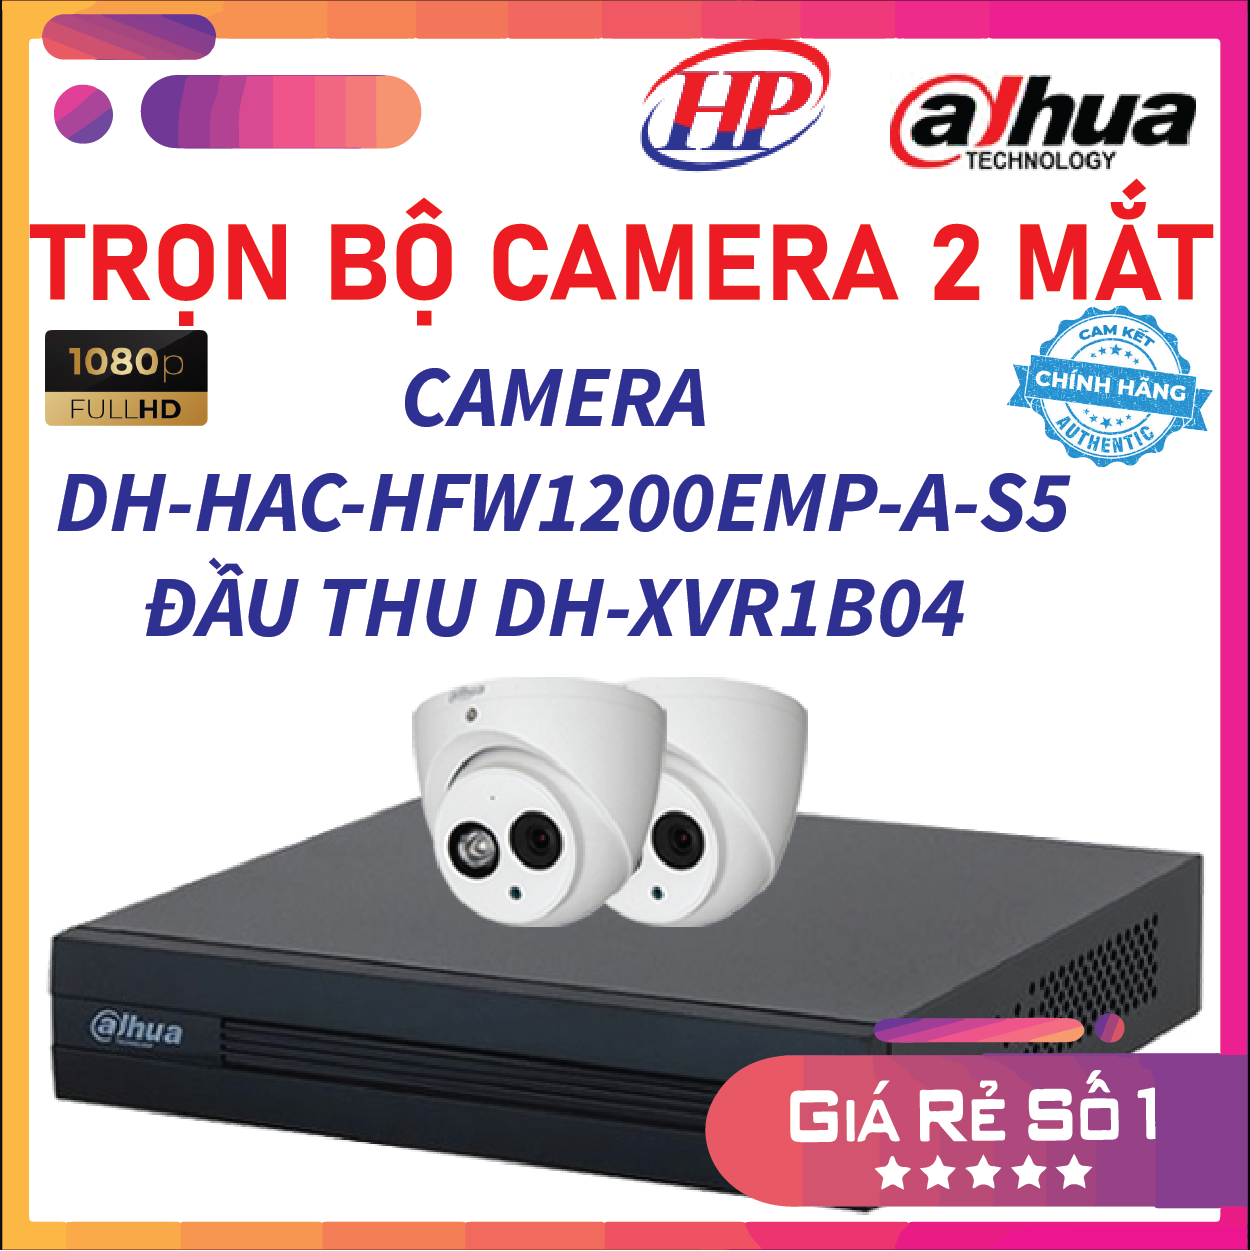 Trọn bộ 02 Camera HDCVI 2MP DAHUA DH-HAC-HDW1200EMP-A-S5 - Đầu thu 4 cổng DH-XVR1B04 đầy đủ phụ kiện, Hàng chính hãng